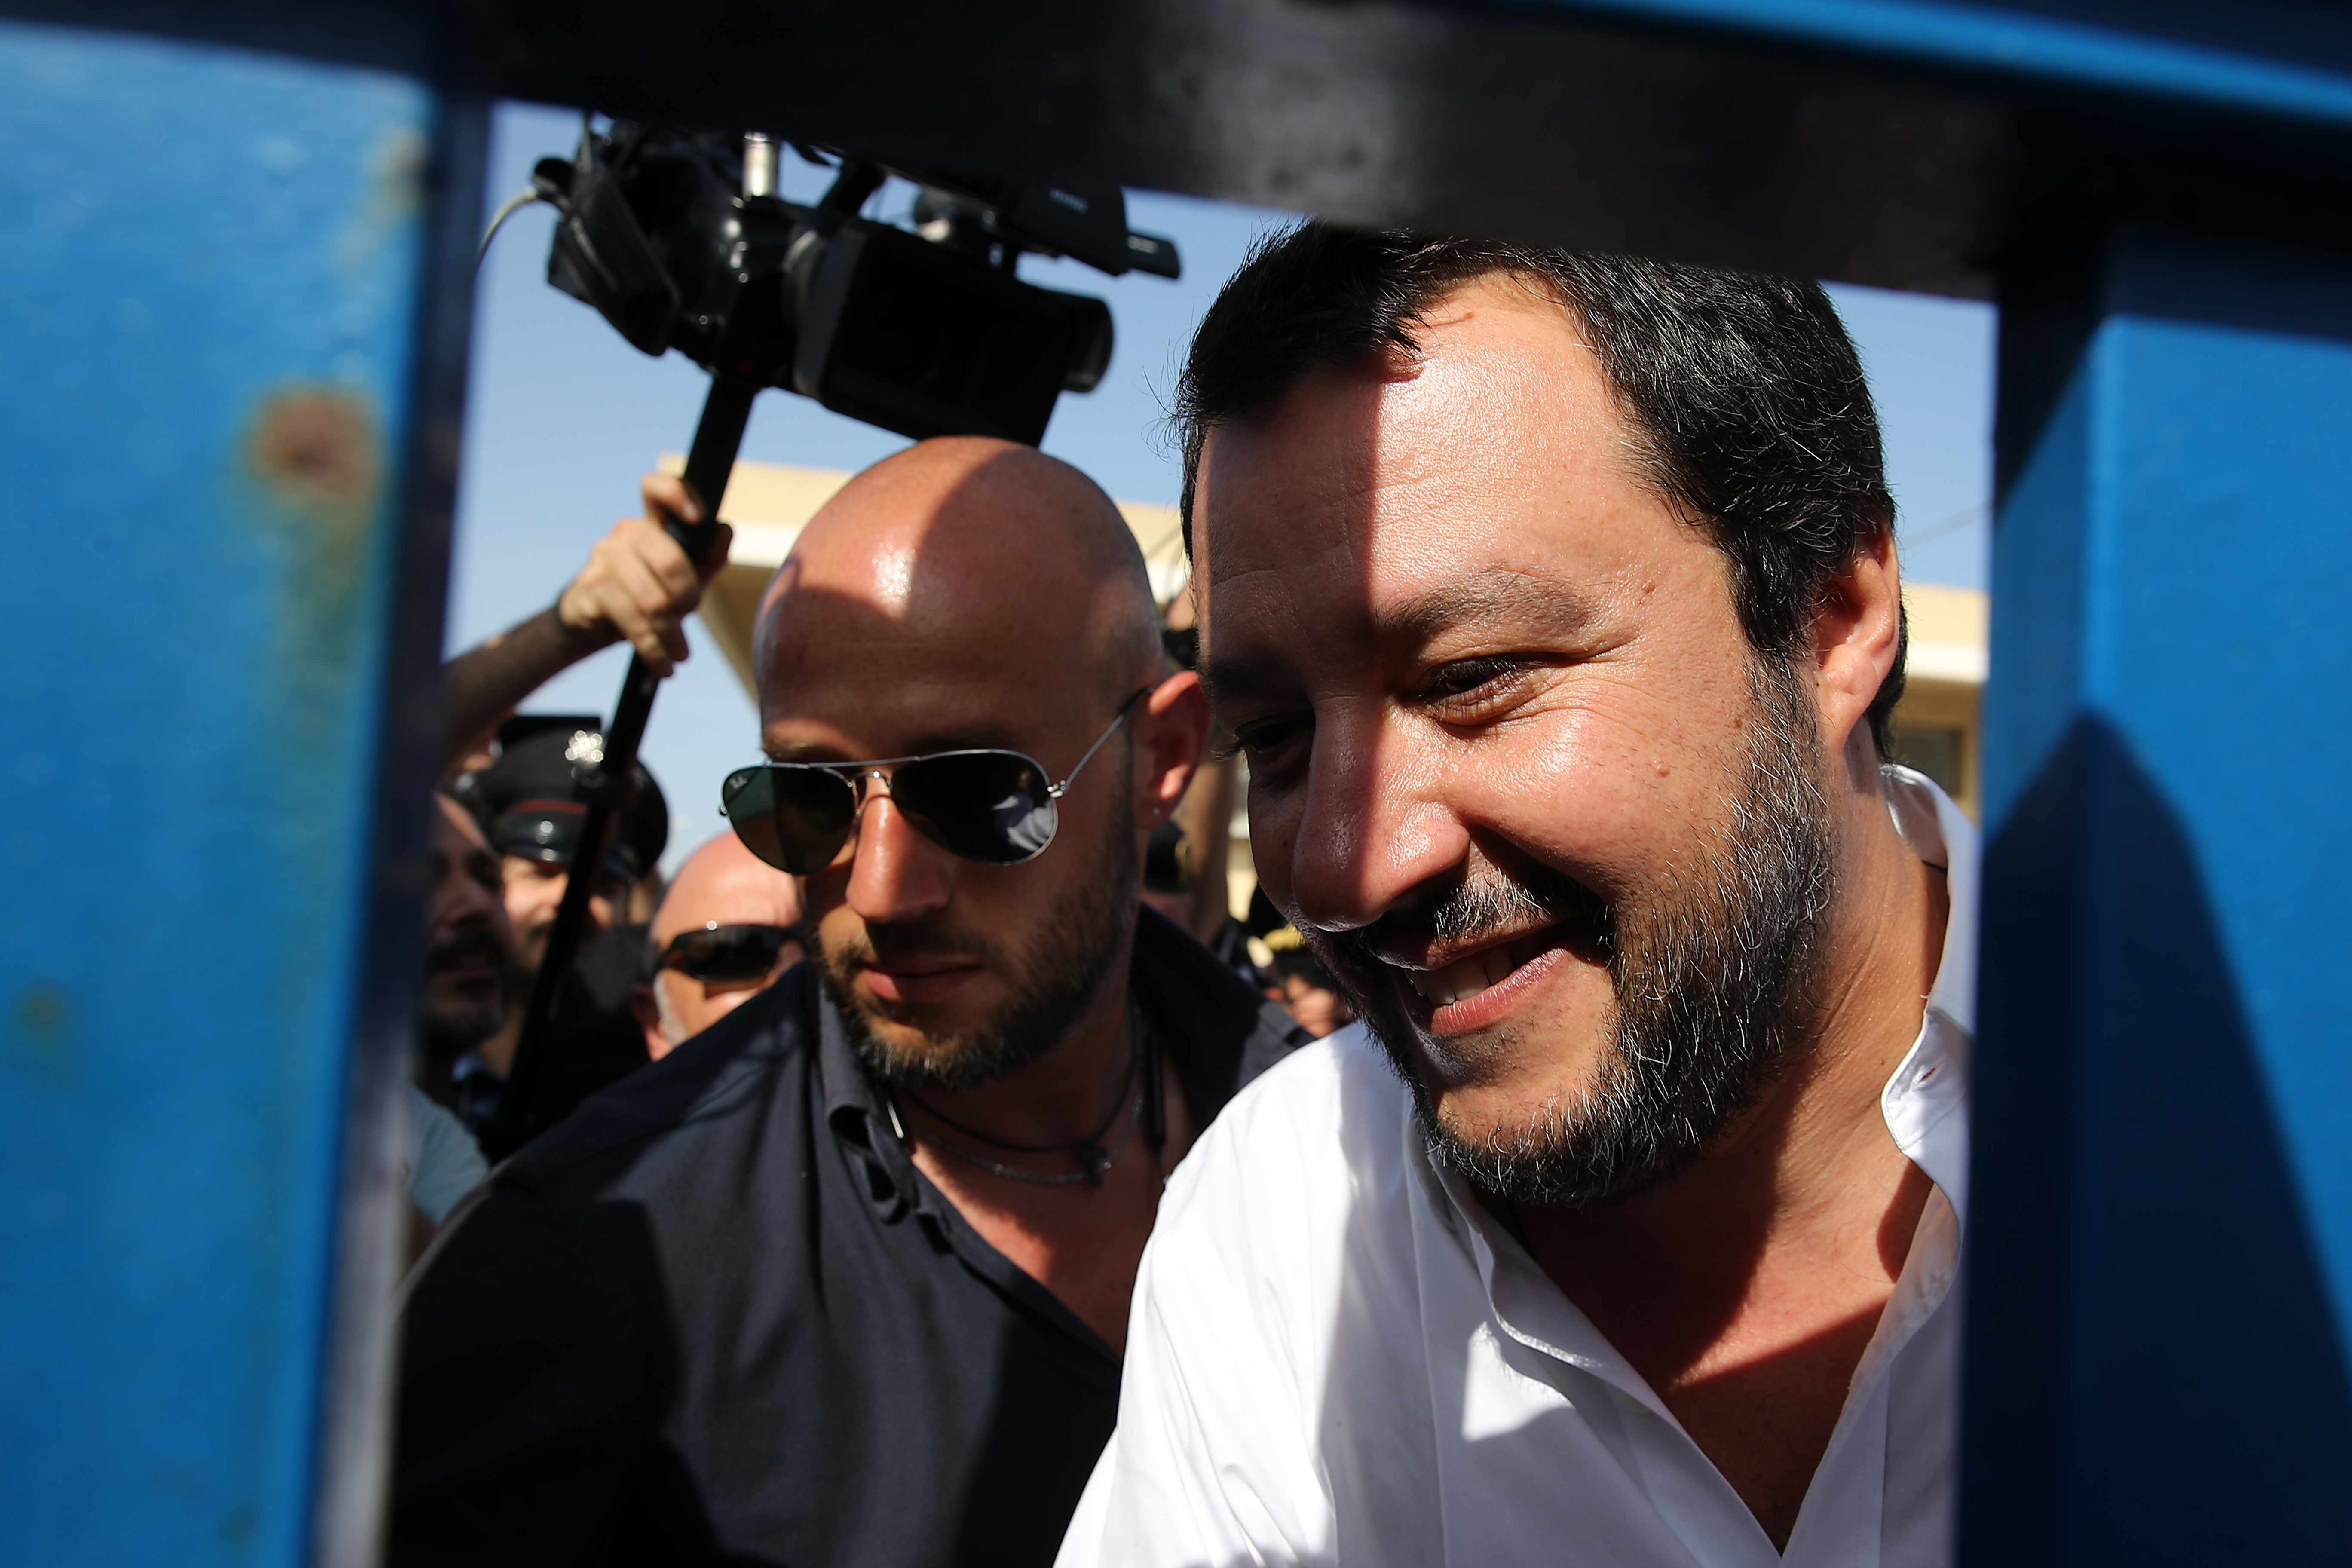 Bevetette magát az új olasz belügyminiszter: Szicília nem lehet Európa menekülttábora, lehet csomagolni